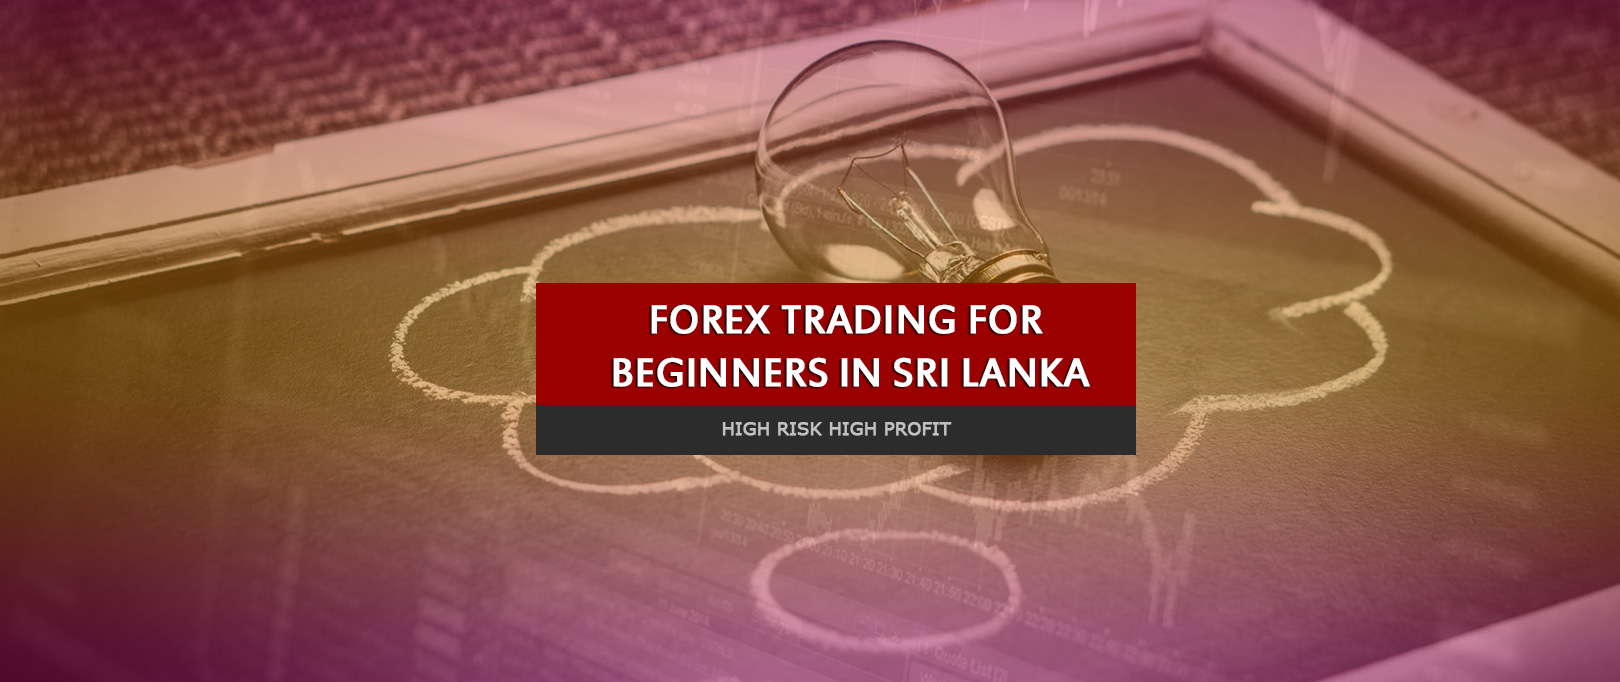 Forex brokers in sri lanka